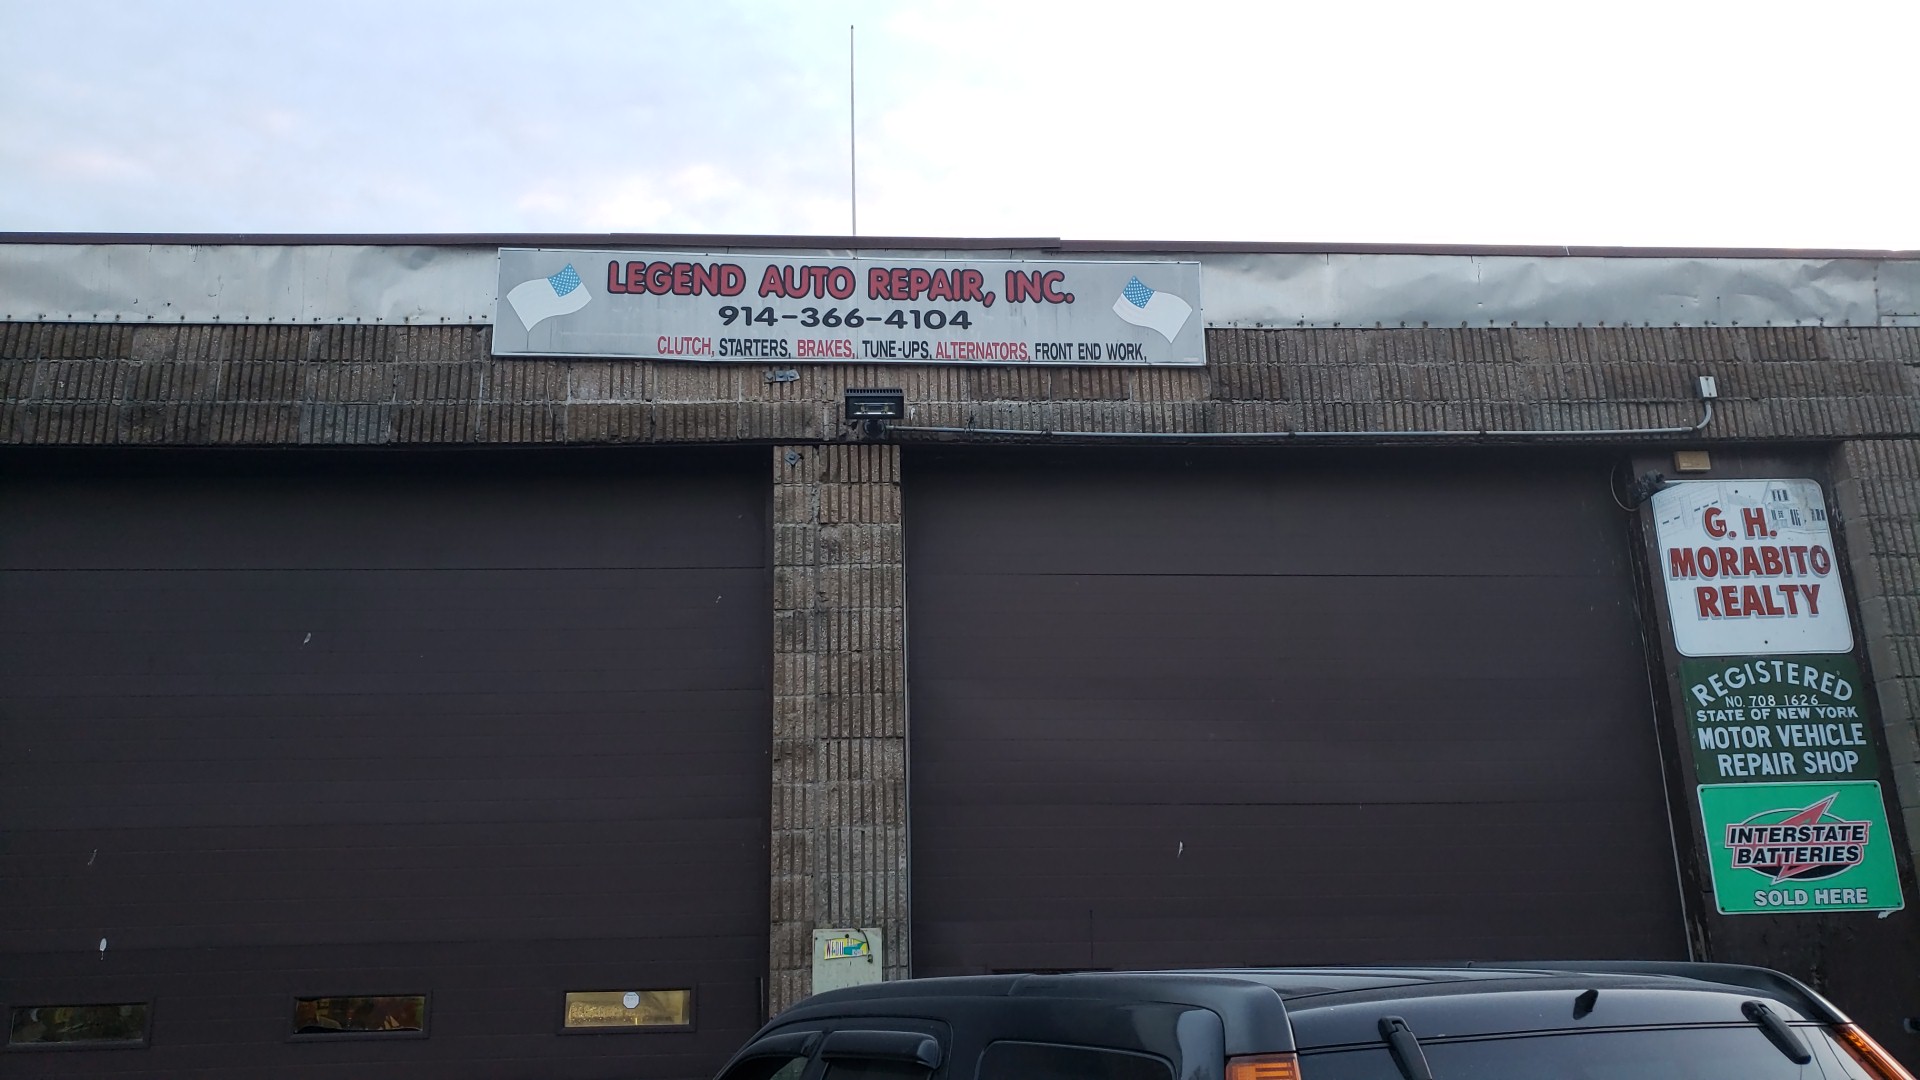 Legend Auto Repair Inc